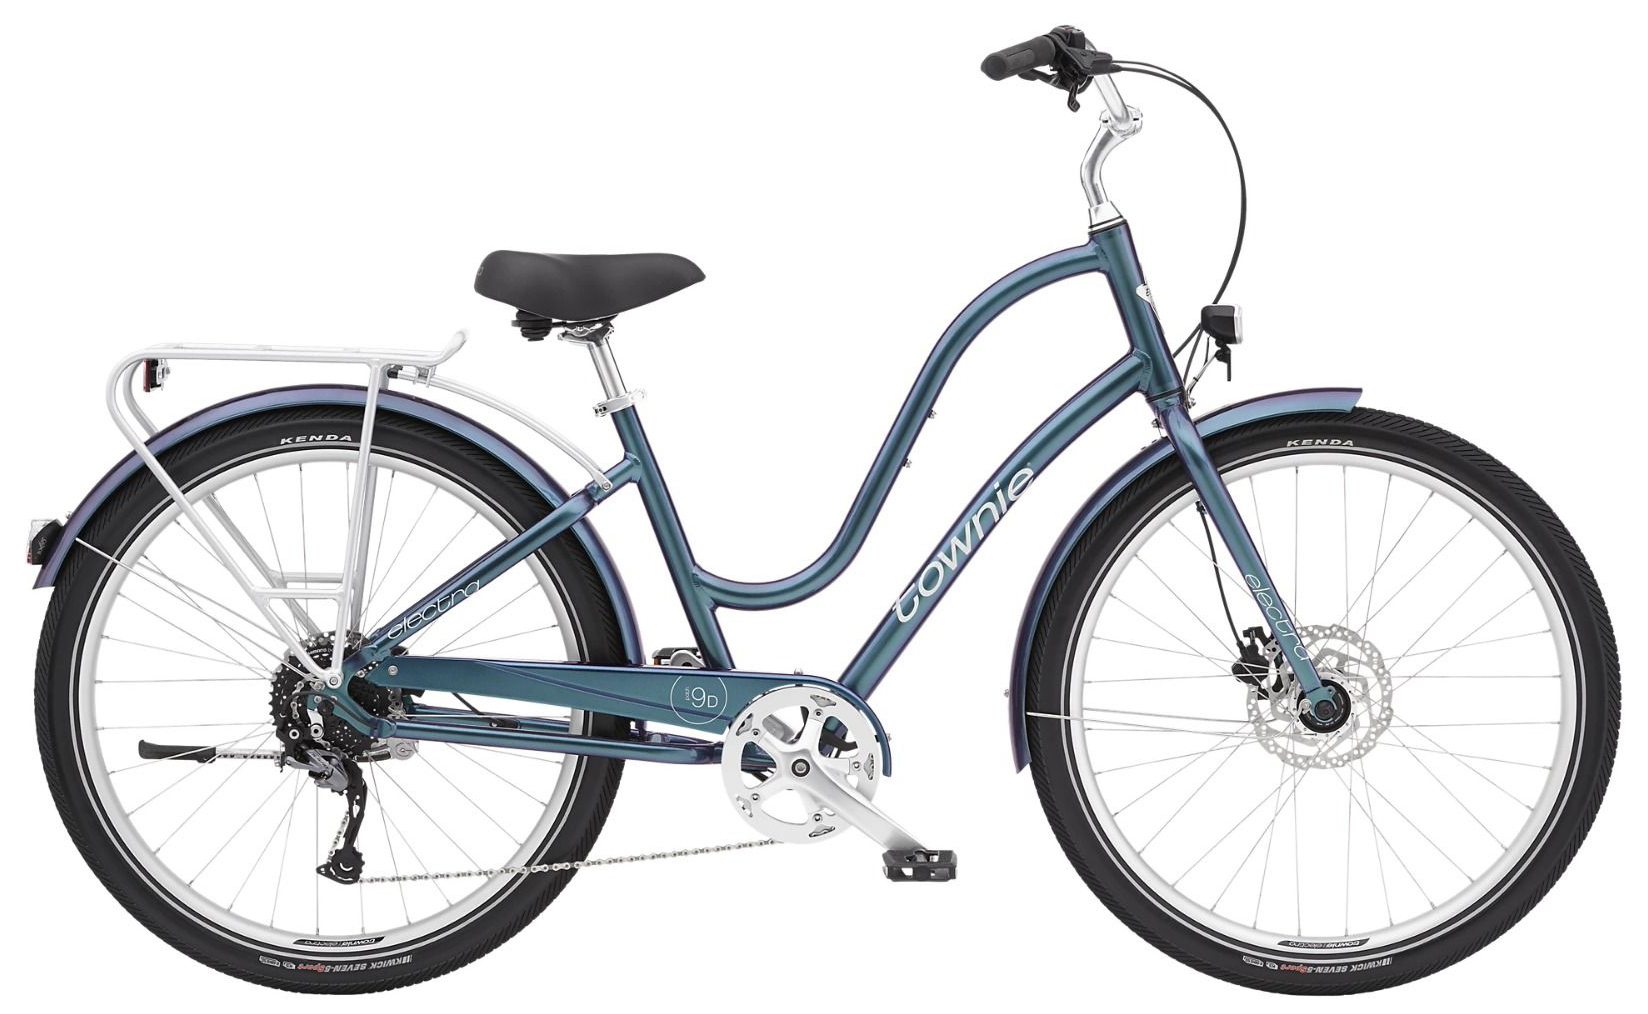  Отзывы о Городском велосипеде Electra Townie Path 9D EQ Step Thru (2021) 2021